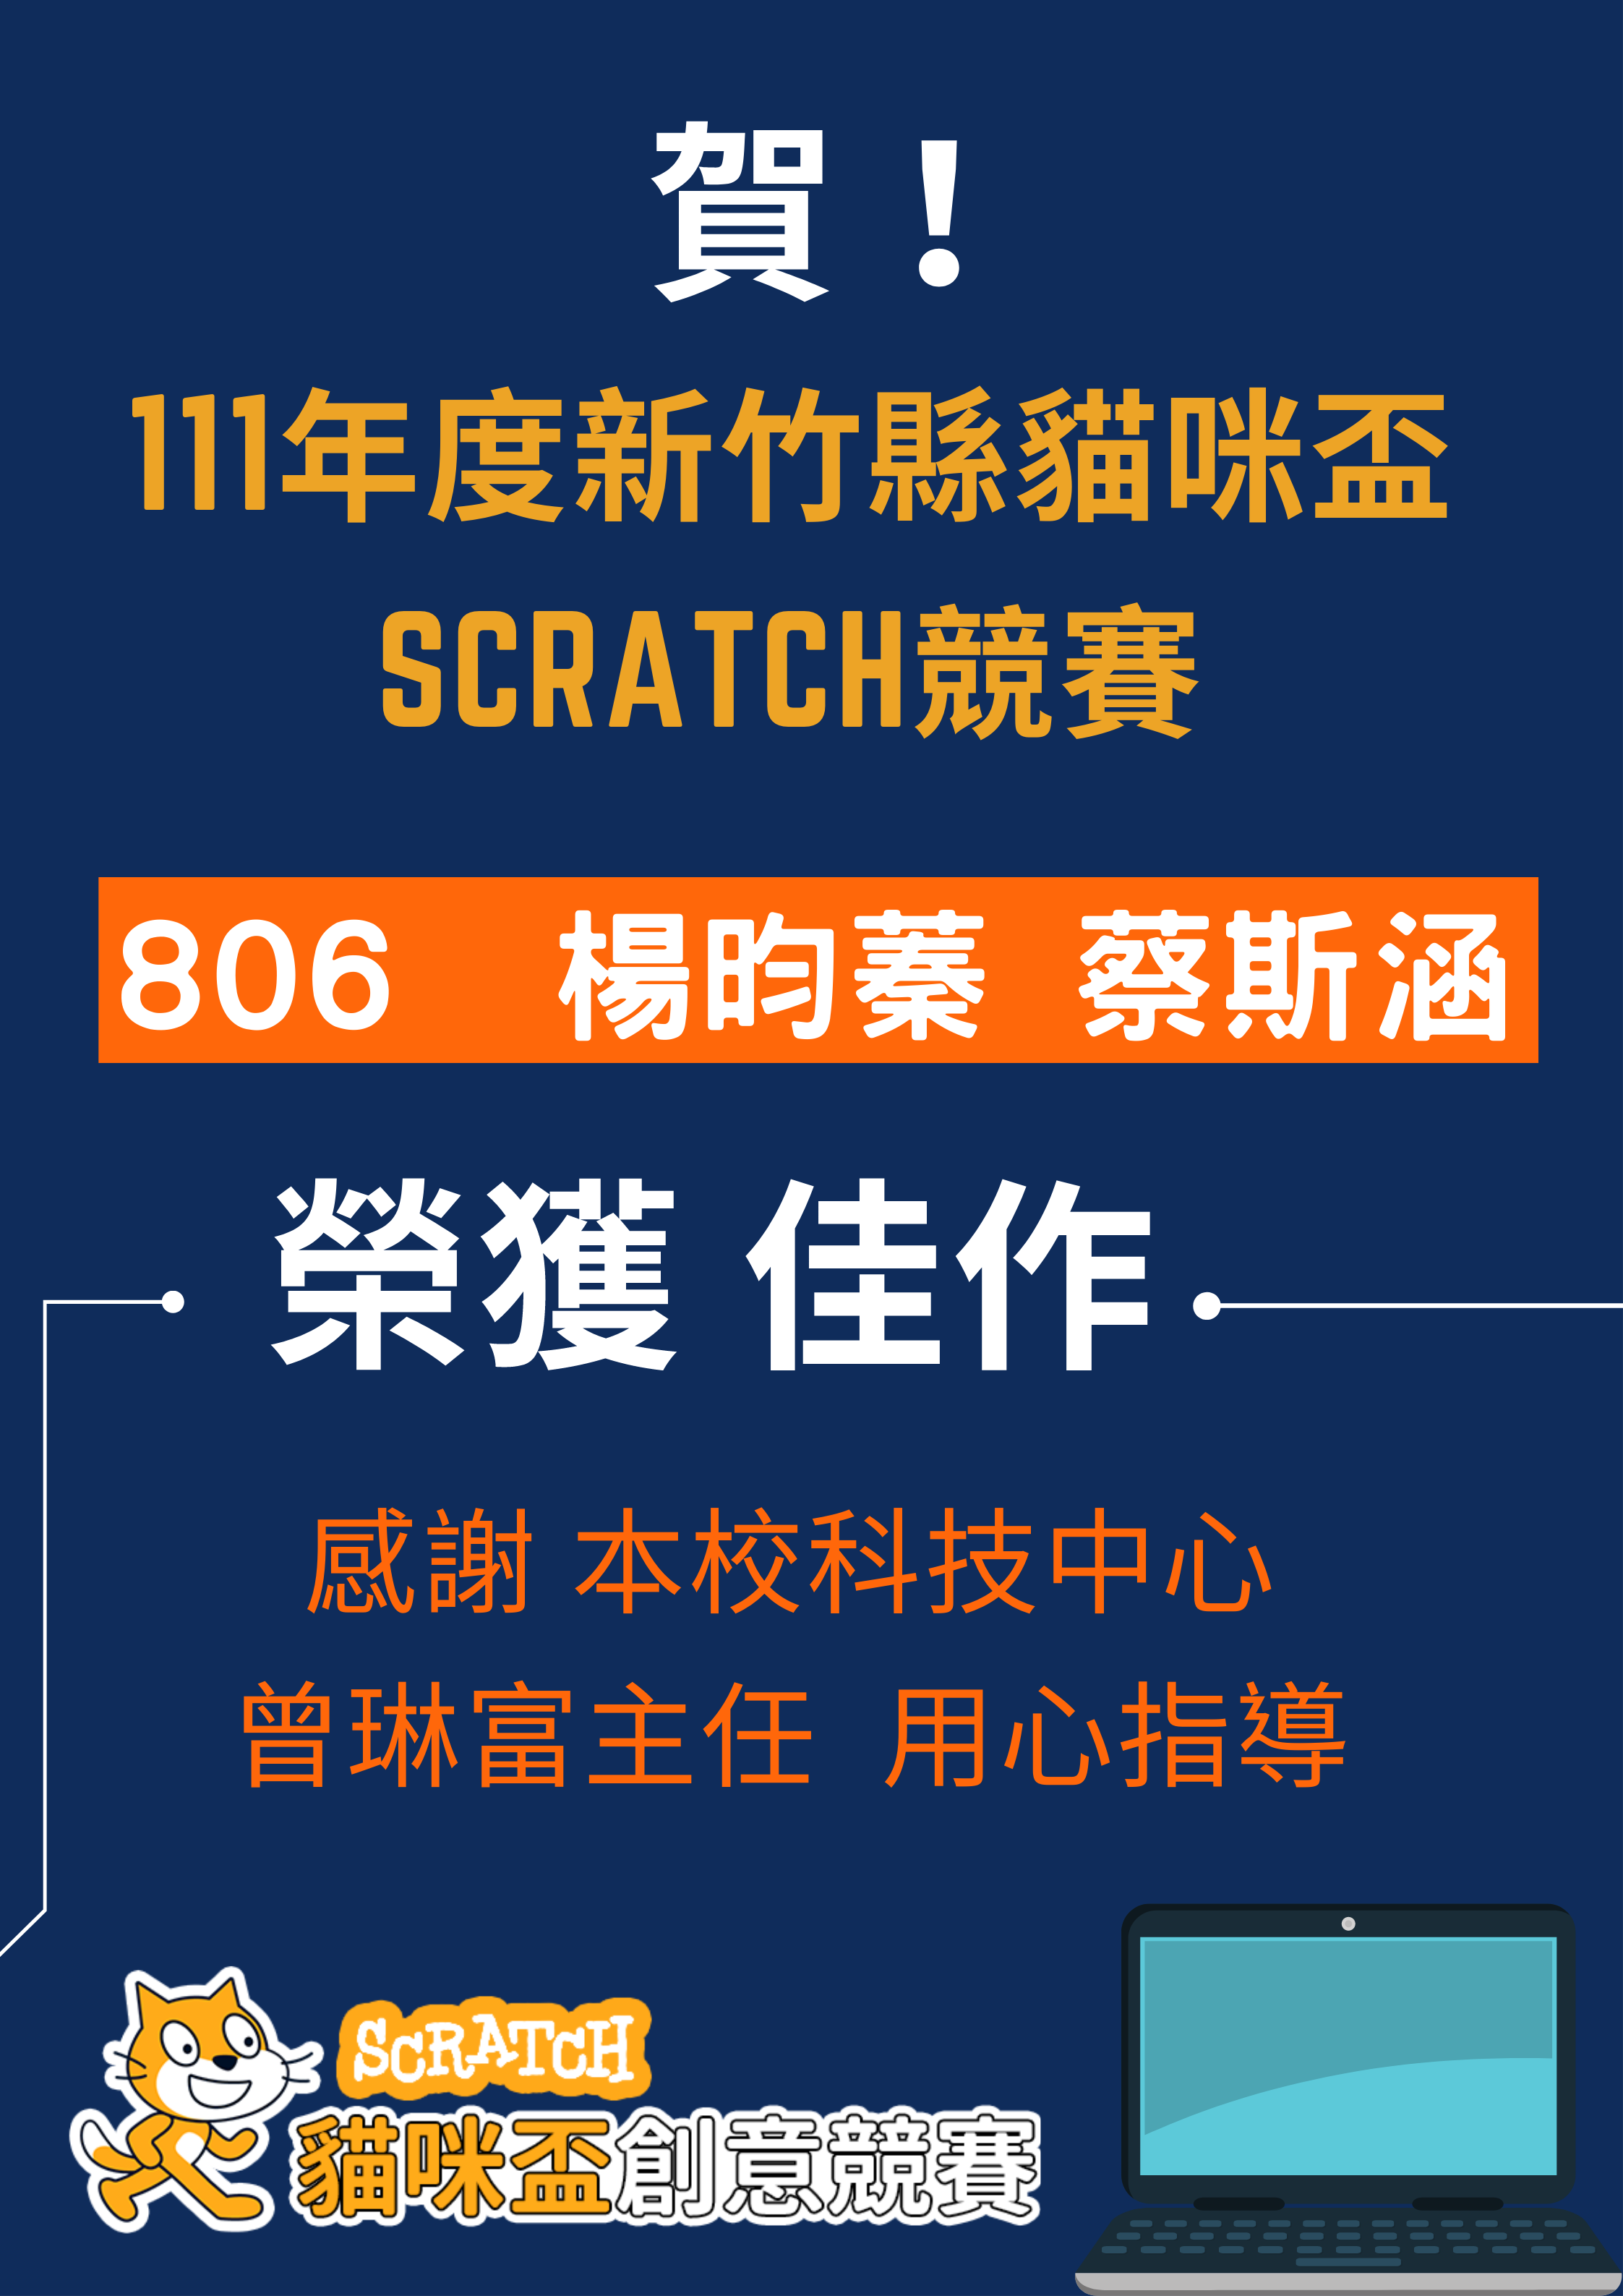 111年度新竹縣貓咪盃Scratch競賽